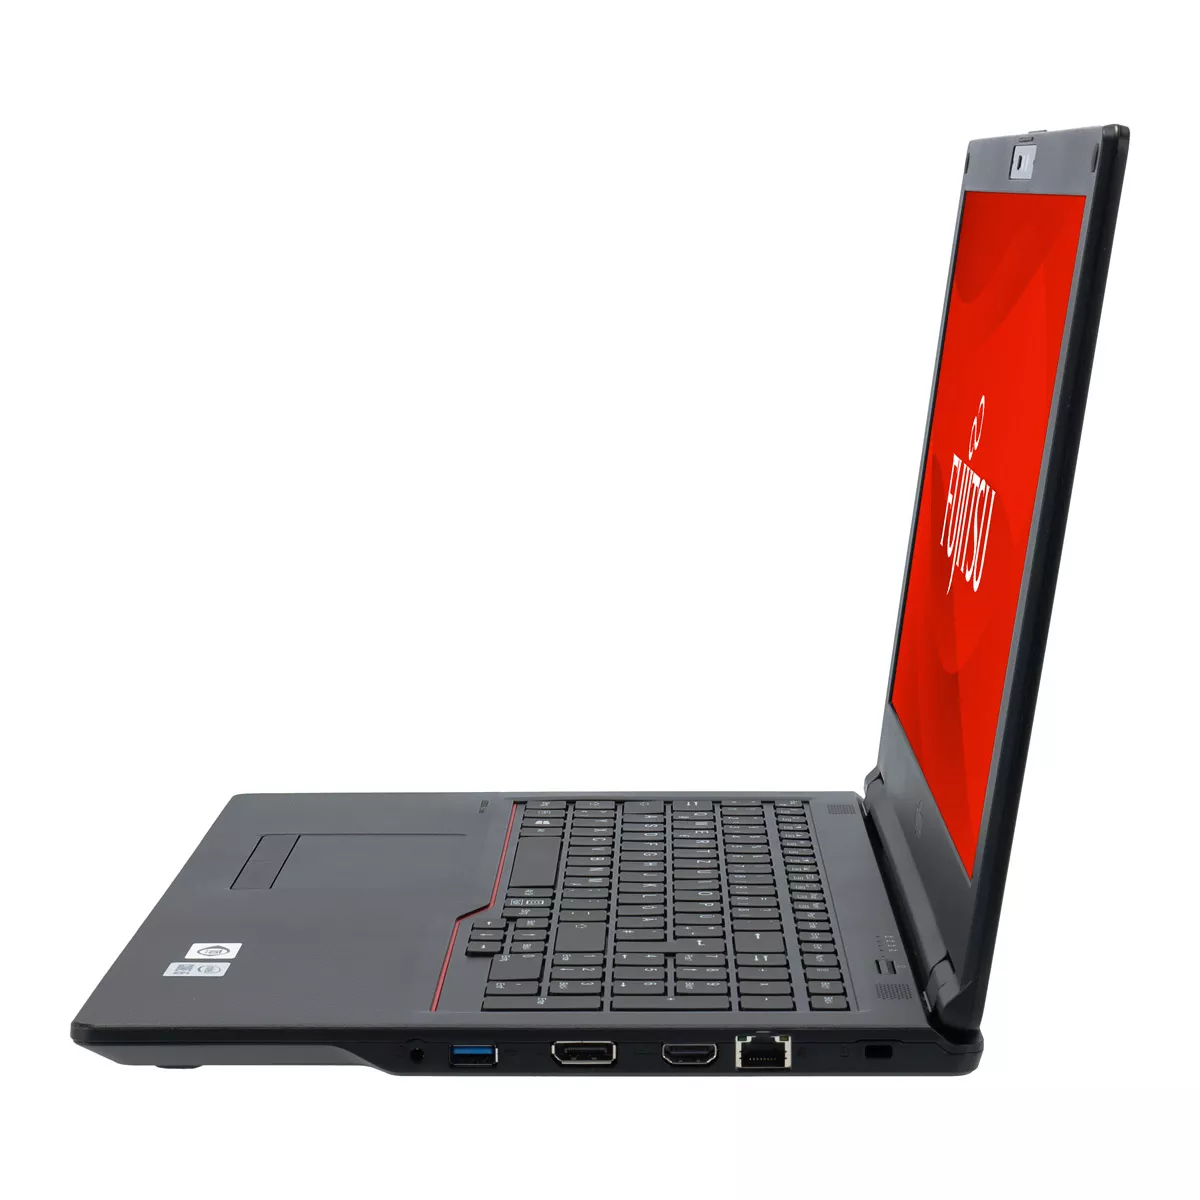 Fujitsu Lifebook E558 Core i5 8250U Full-HD 8 GB DDR4 240 M.2 SSD Webcam A+